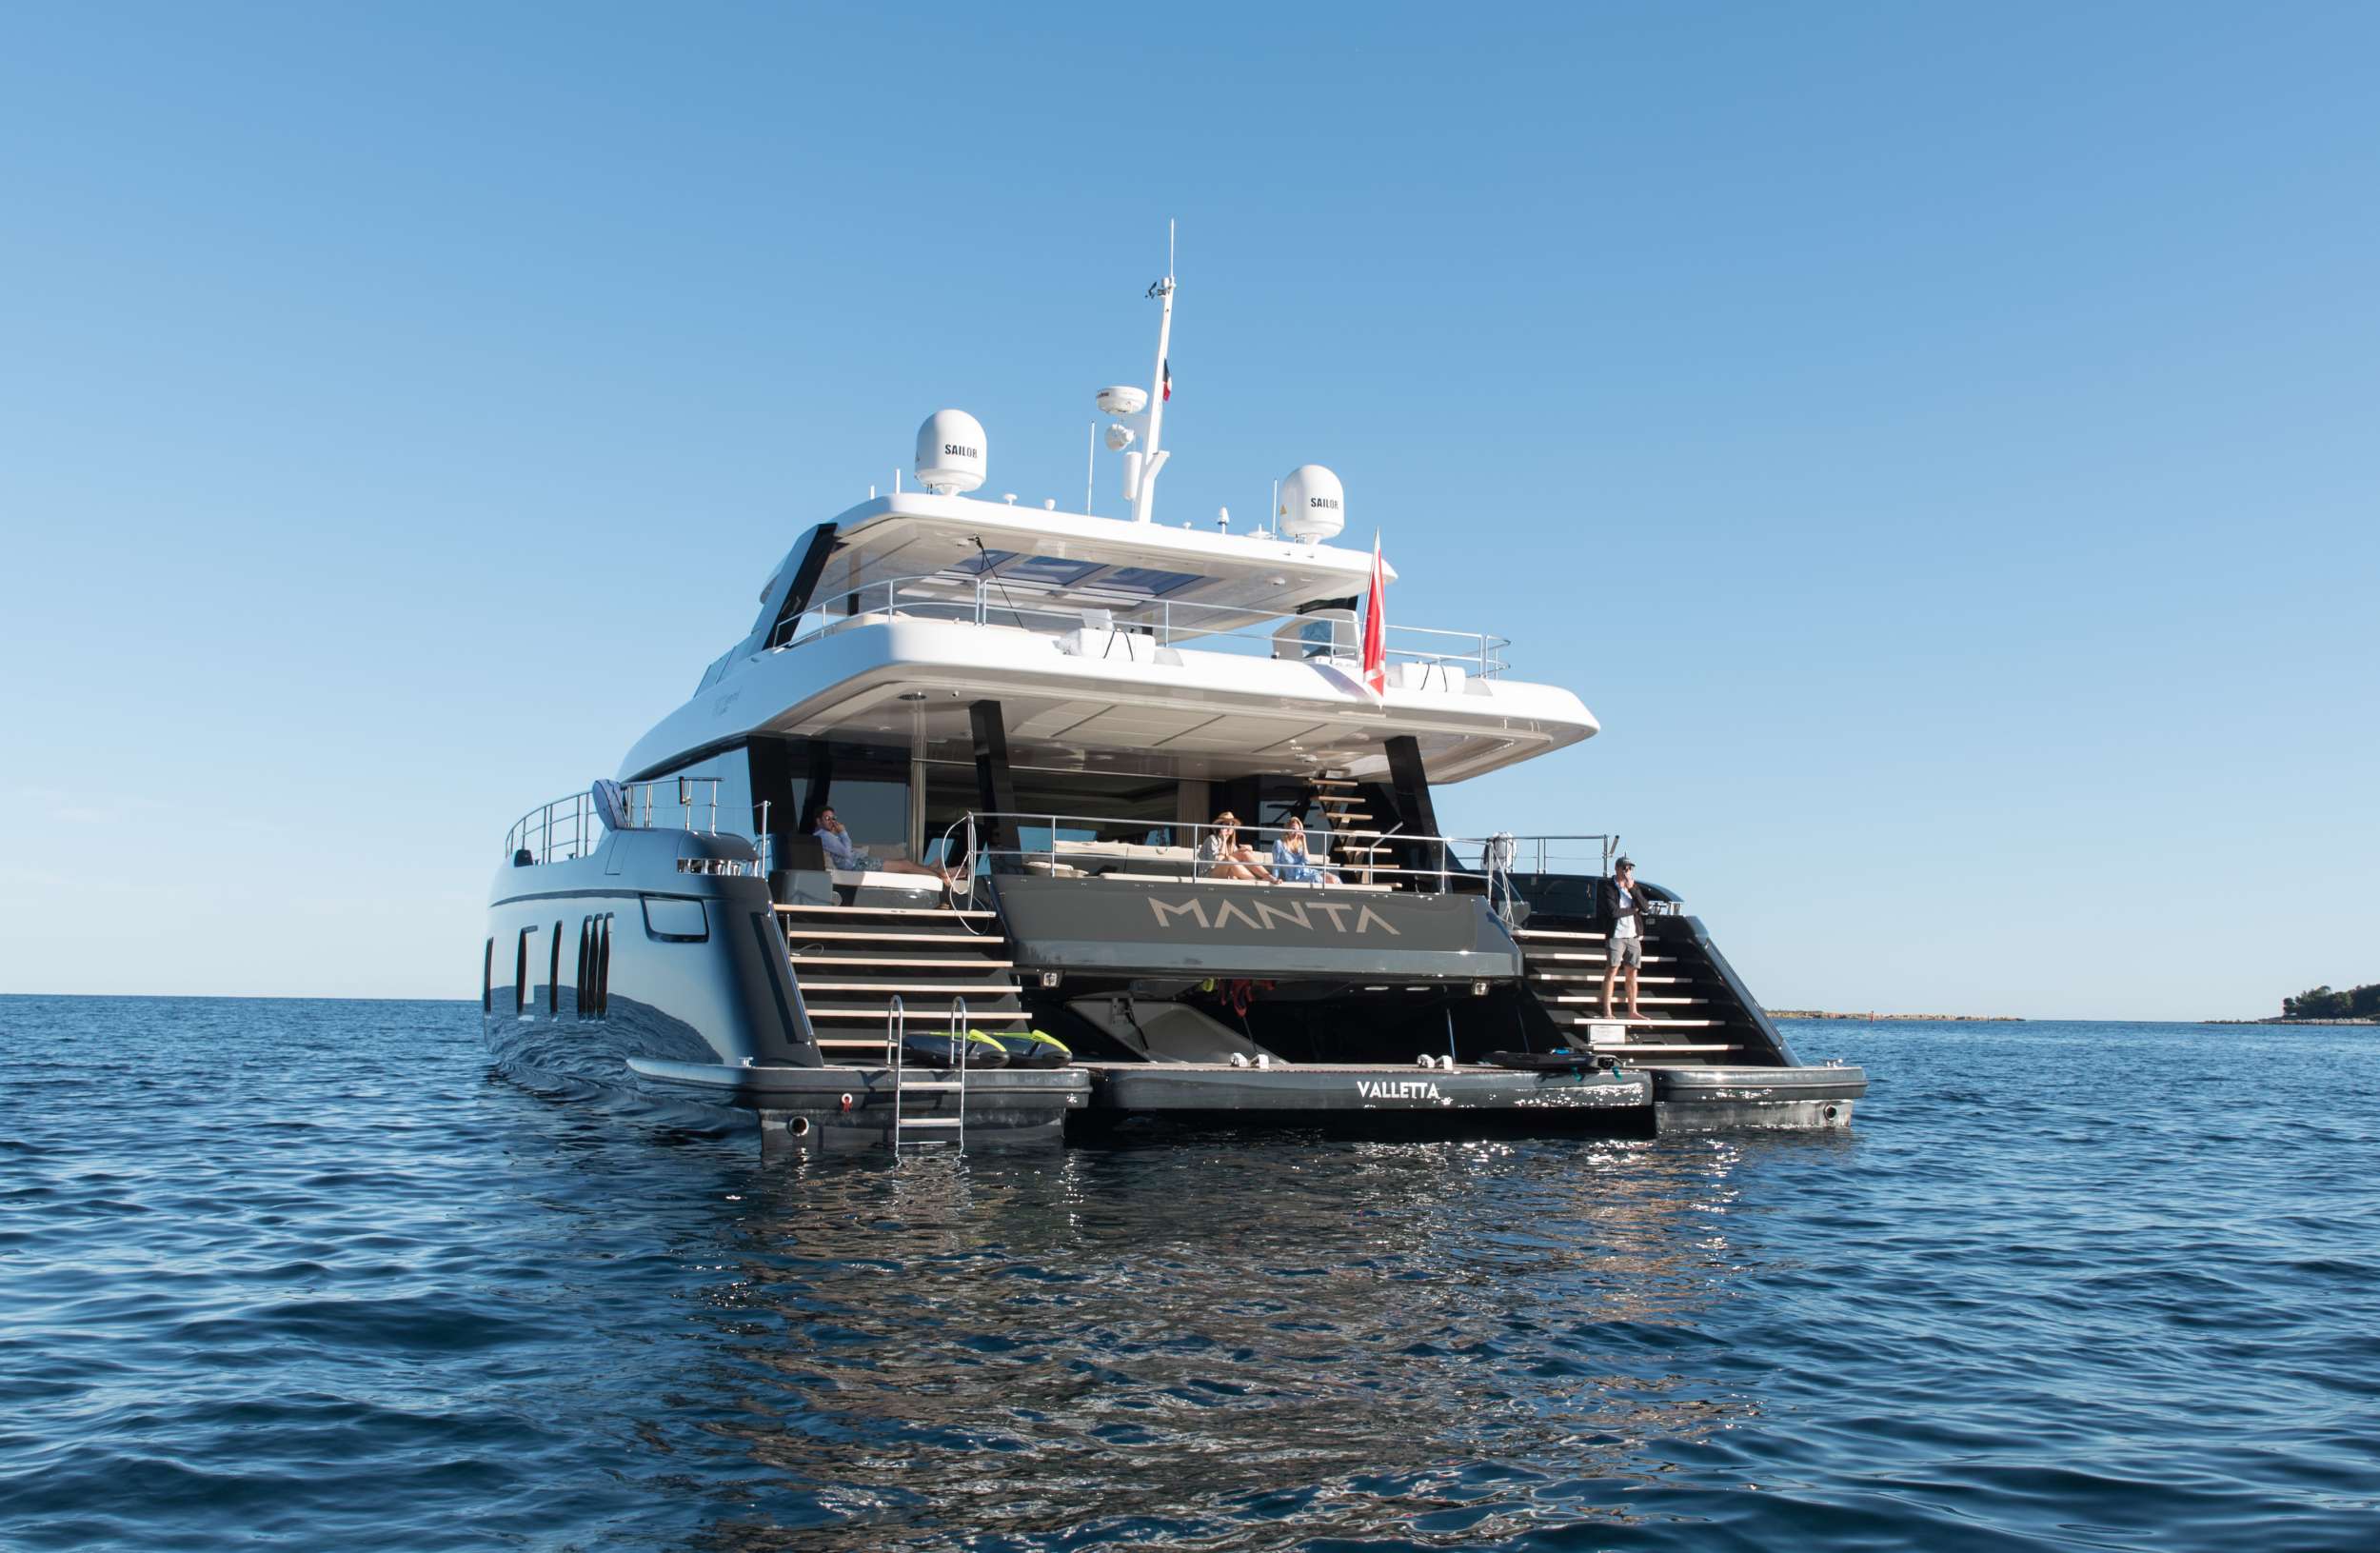 MANTA - Superyacht charter Croatia & Boat hire in Riviera, Cors, Sard, Italy, Spain, Turkey, Croatia, Greece 1